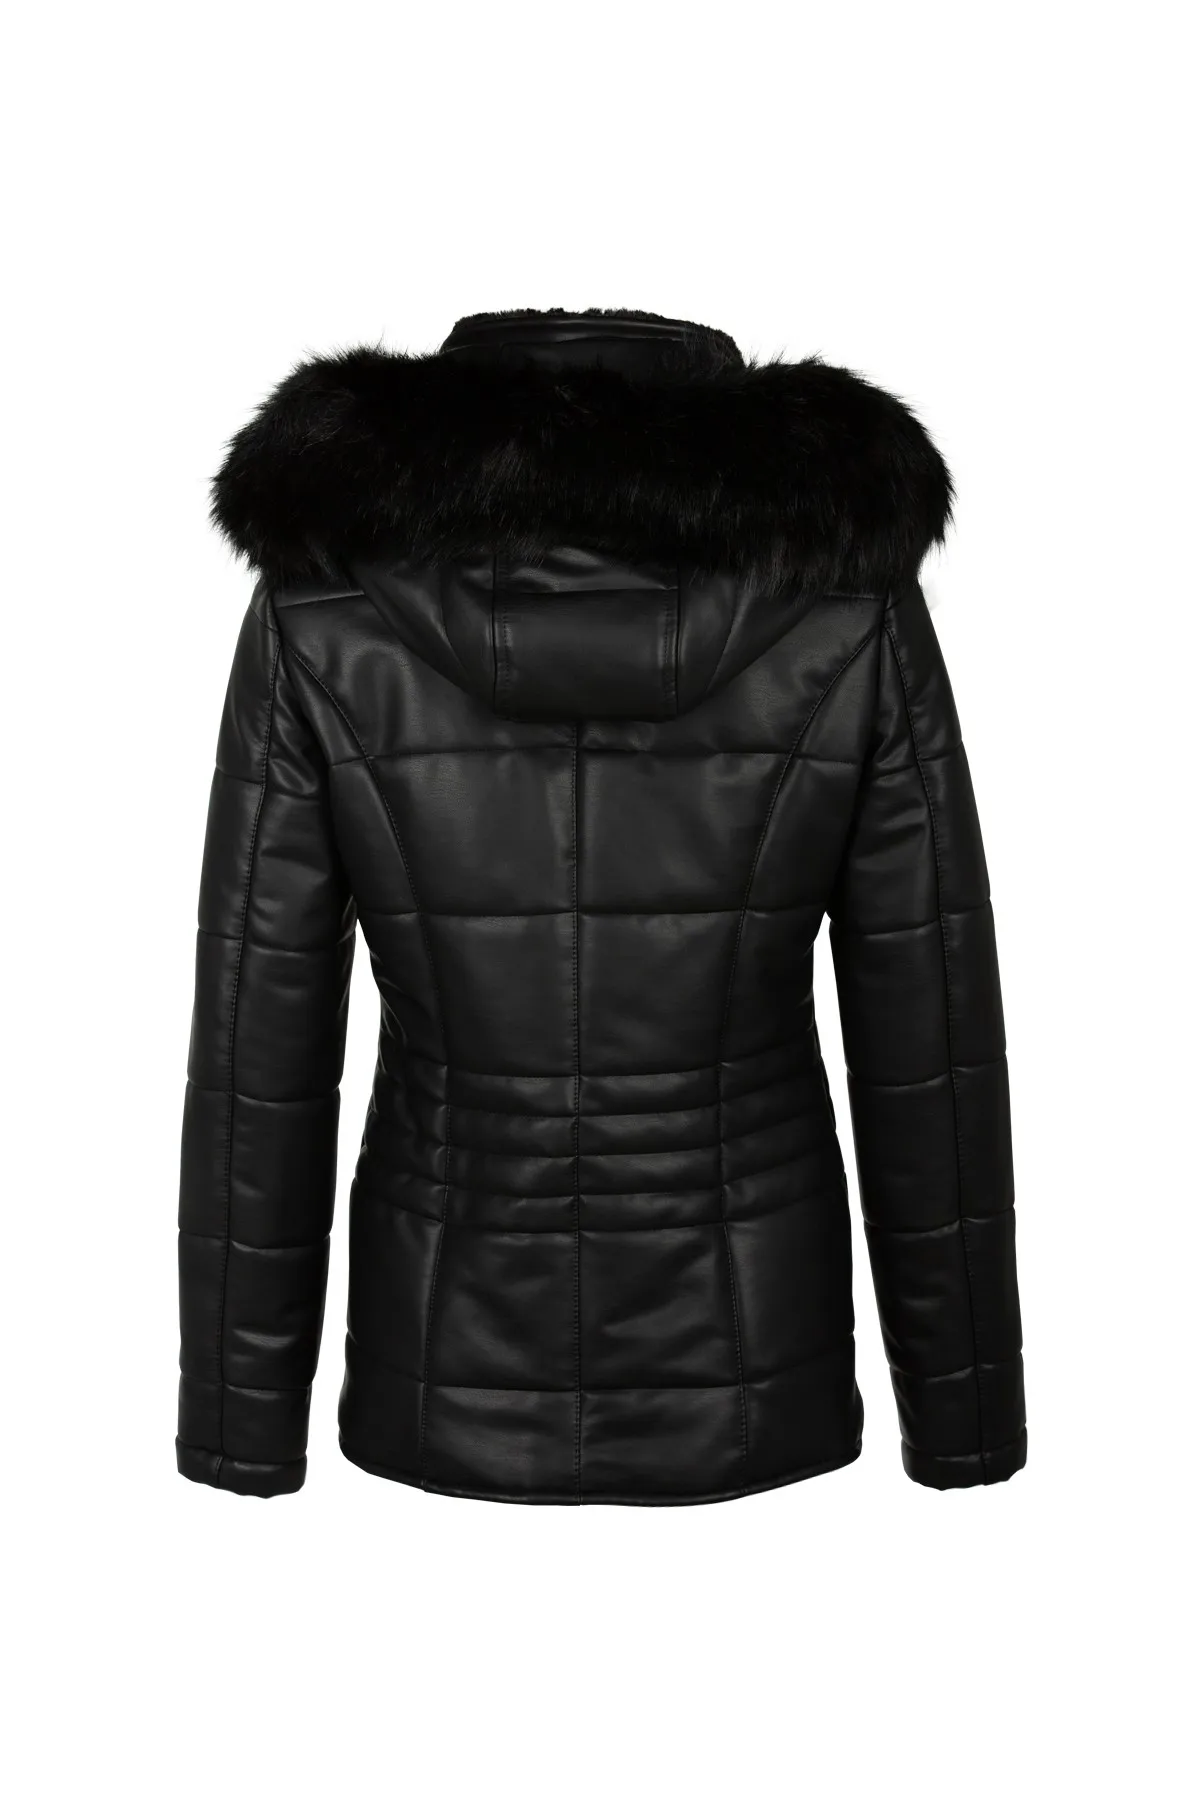 SERESSTORE Fur Hooded Leather Coat Women's jacket Women's spring jacket women jacket spring 2022 down jacket women's winter 2022